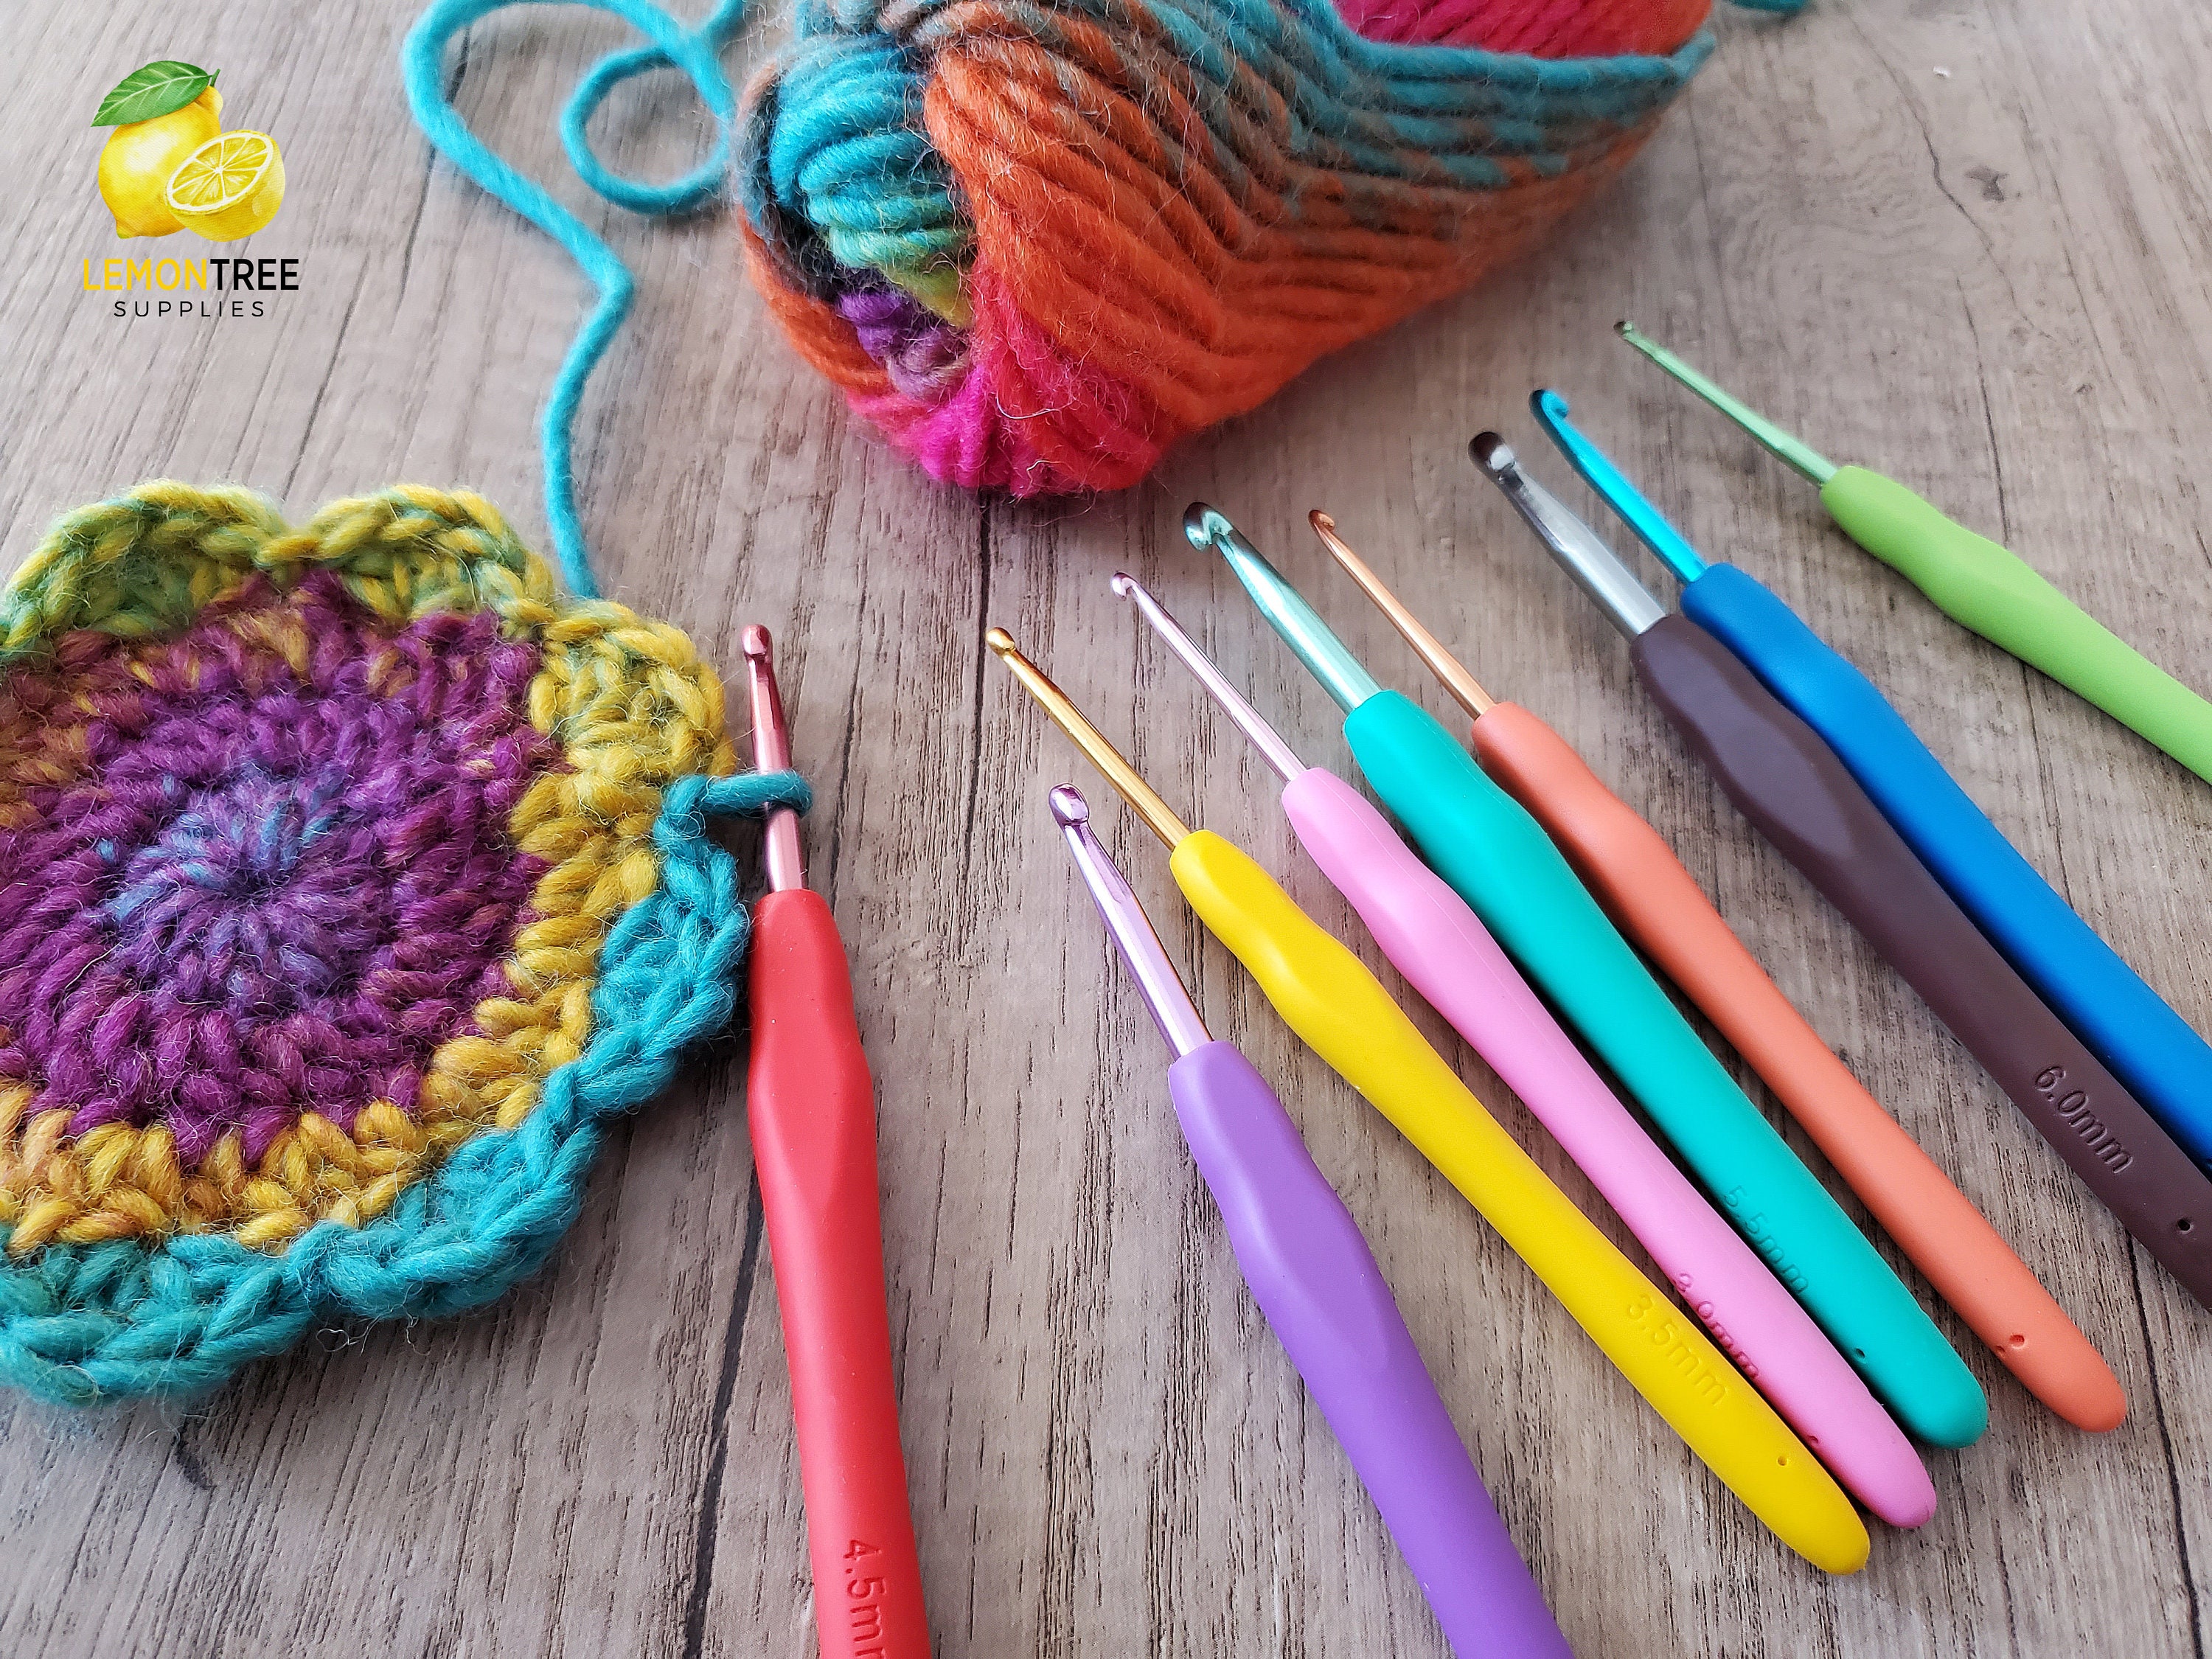 67 PCS Crochet Hook Set with Yarn - Full Starter Kit UK